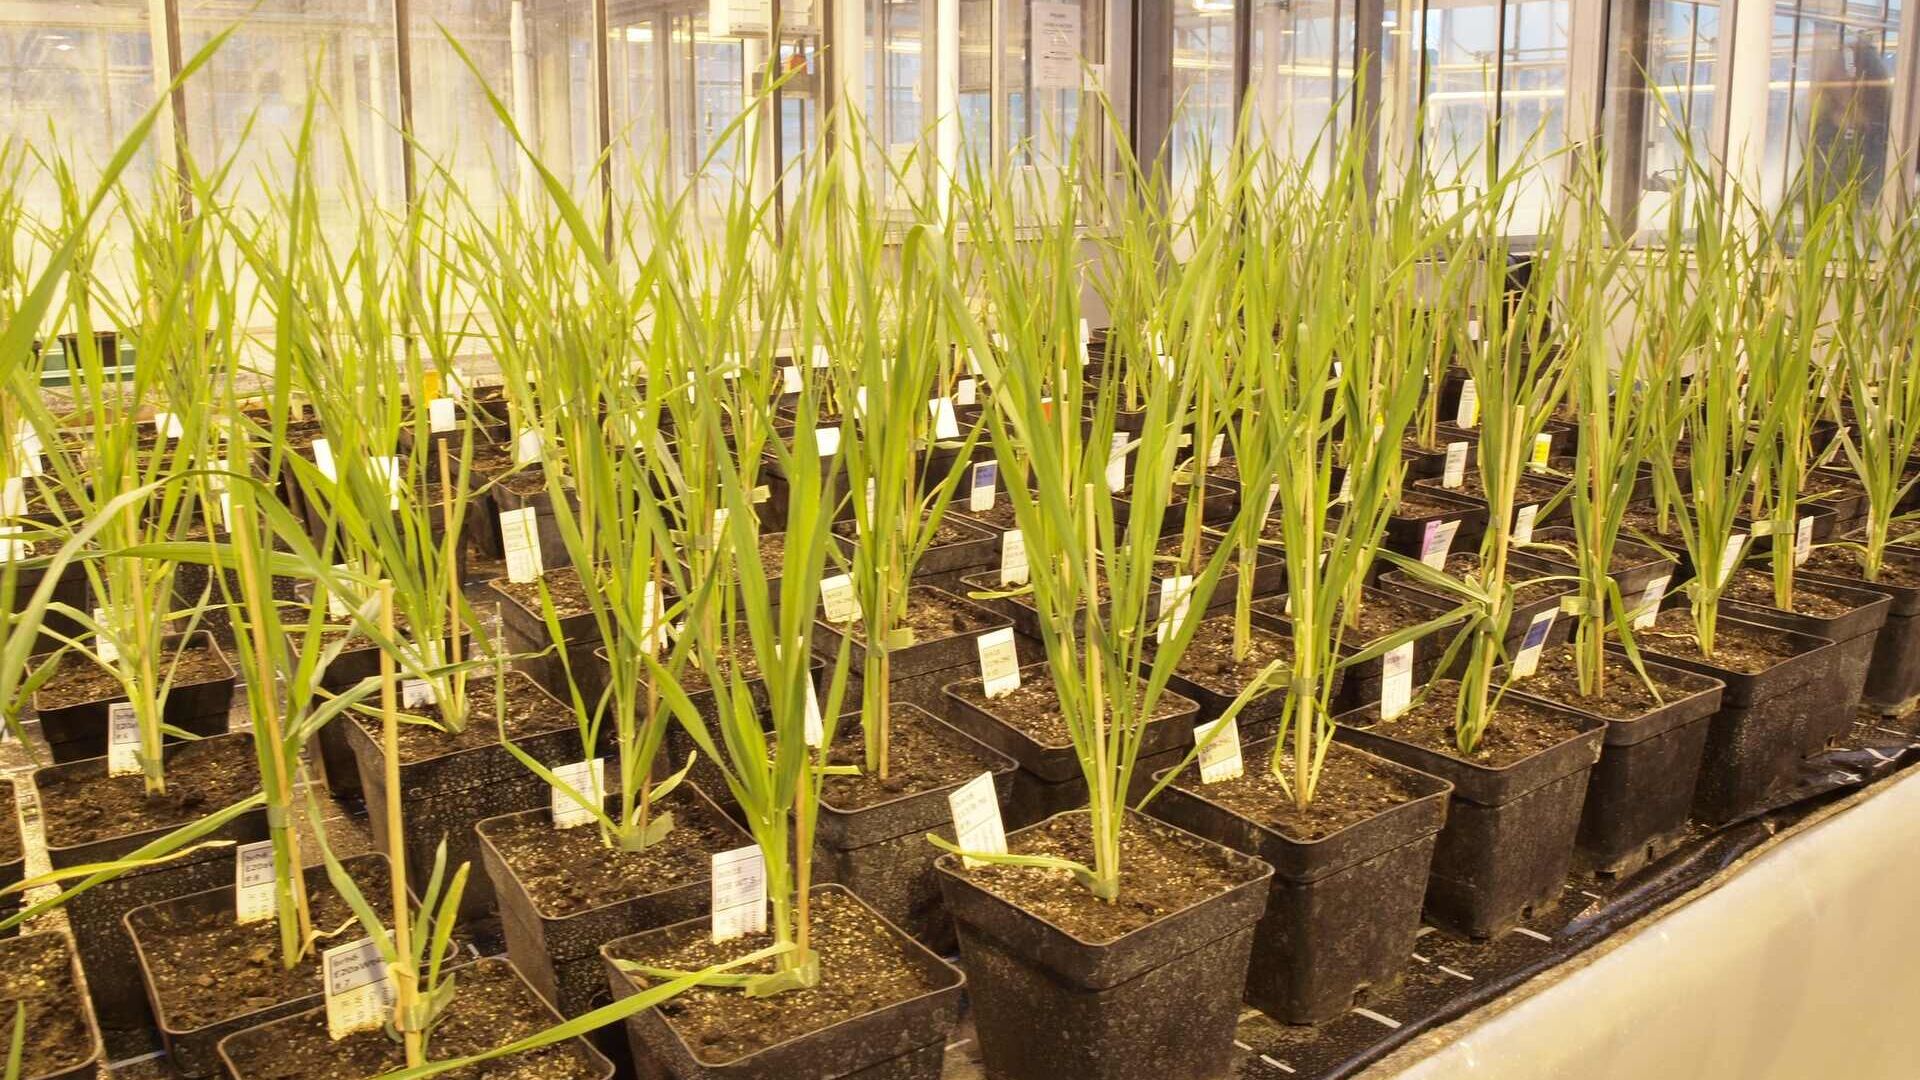 Ordi modificat genèticament: Agroscope adquirirà coneixements durant més de tres anys sobre el comportament de les plantes en camp obert al lloc de Reckenholz (Zuric) amb autorització de l'Oficina Federal de Medi Ambient